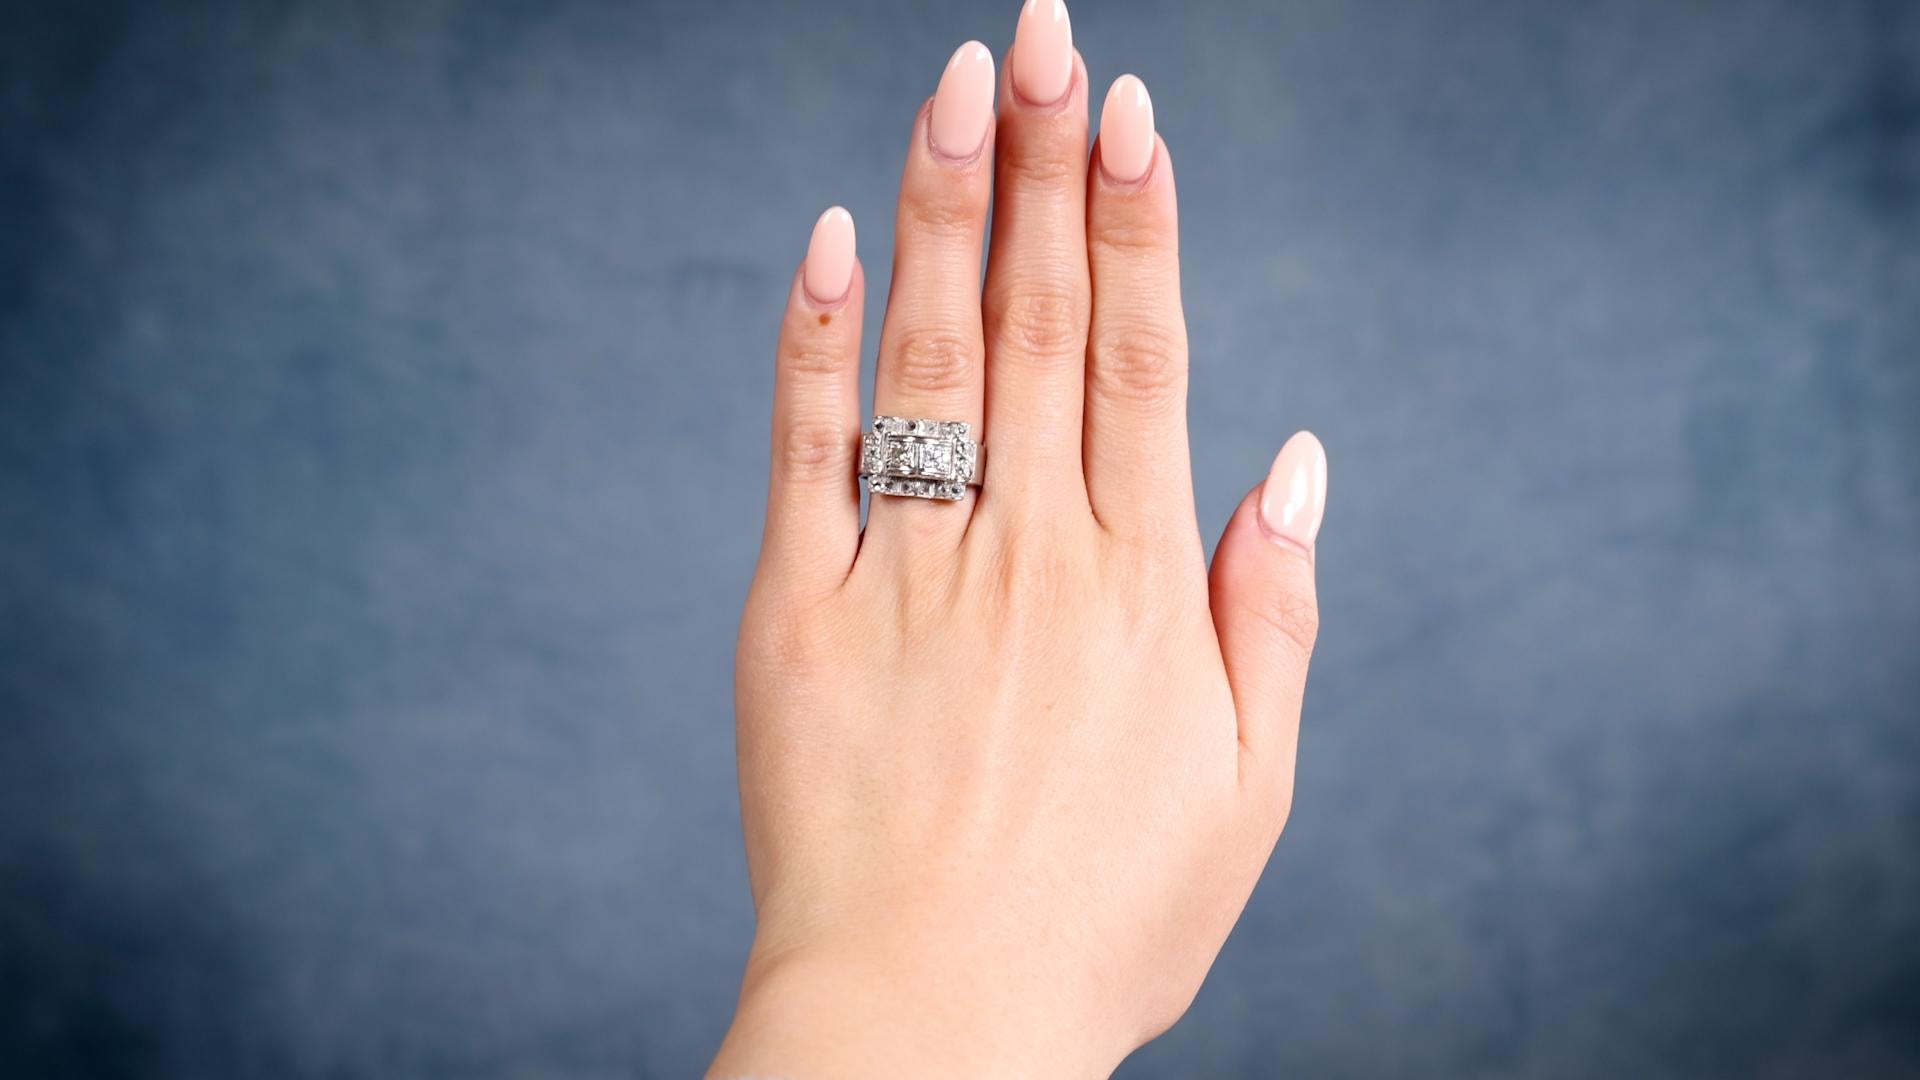 Ein Art Deco Diamant Platin Tank Ring. Mit 24 Diamanten im Rosenschliff und 2 Diamanten im alten europäischen Schliff mit einem Gesamtgewicht von ca. 0,55 Karat, eingestuft als nahezu farblos, Reinheit SI. Gefertigt aus Platin. Um 1930. Der Ring hat